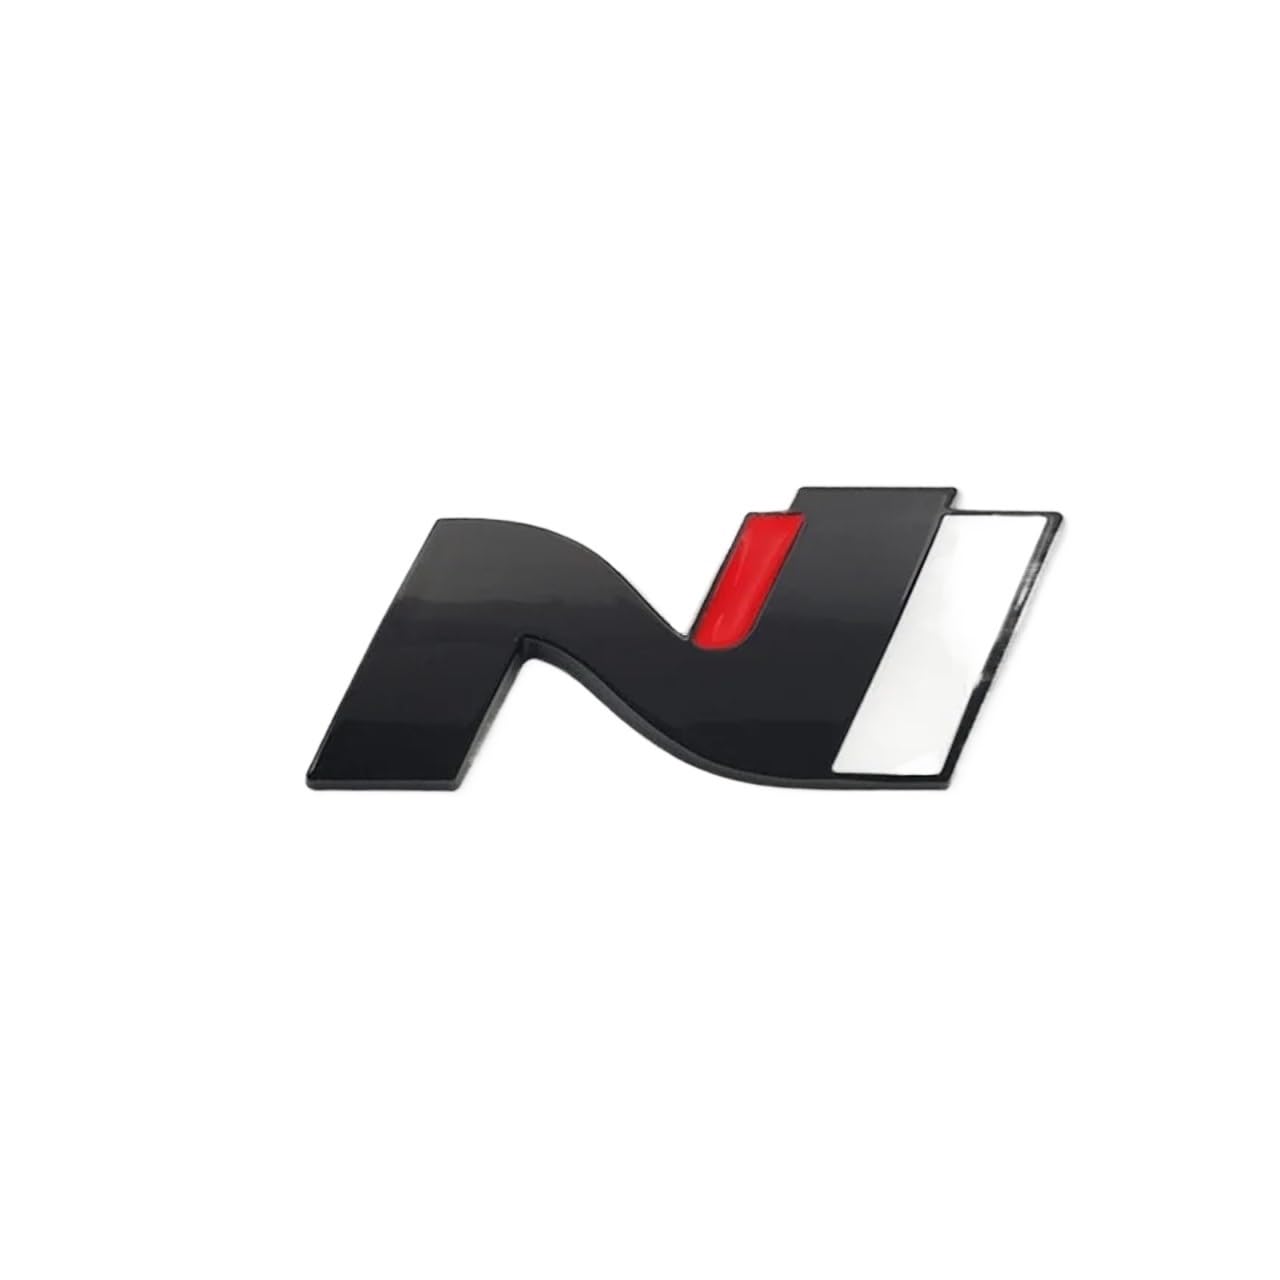 N Line Nline Abzeichen Emblem Aufkleber Frontgrill Kompatibel mit Sonata I30 2021 Elantra Veloster Kona Tucson N Line StylingCar Aufkleber(GRAY) von NRUOS